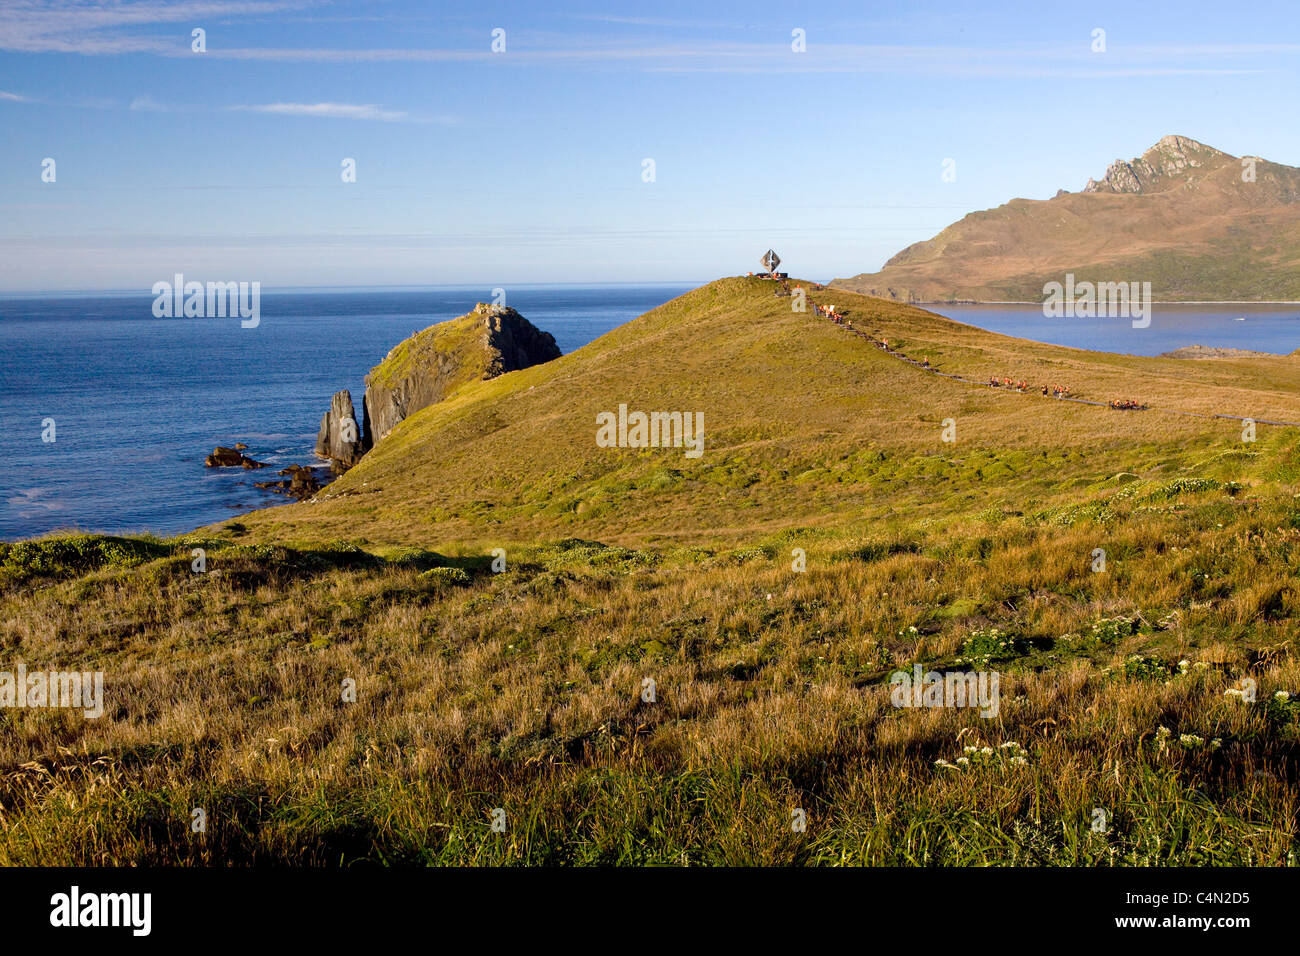 Vue du cap Horn, le point le plus sud de l'Amérique du Sud, à partir de la terre. Banque D'Images